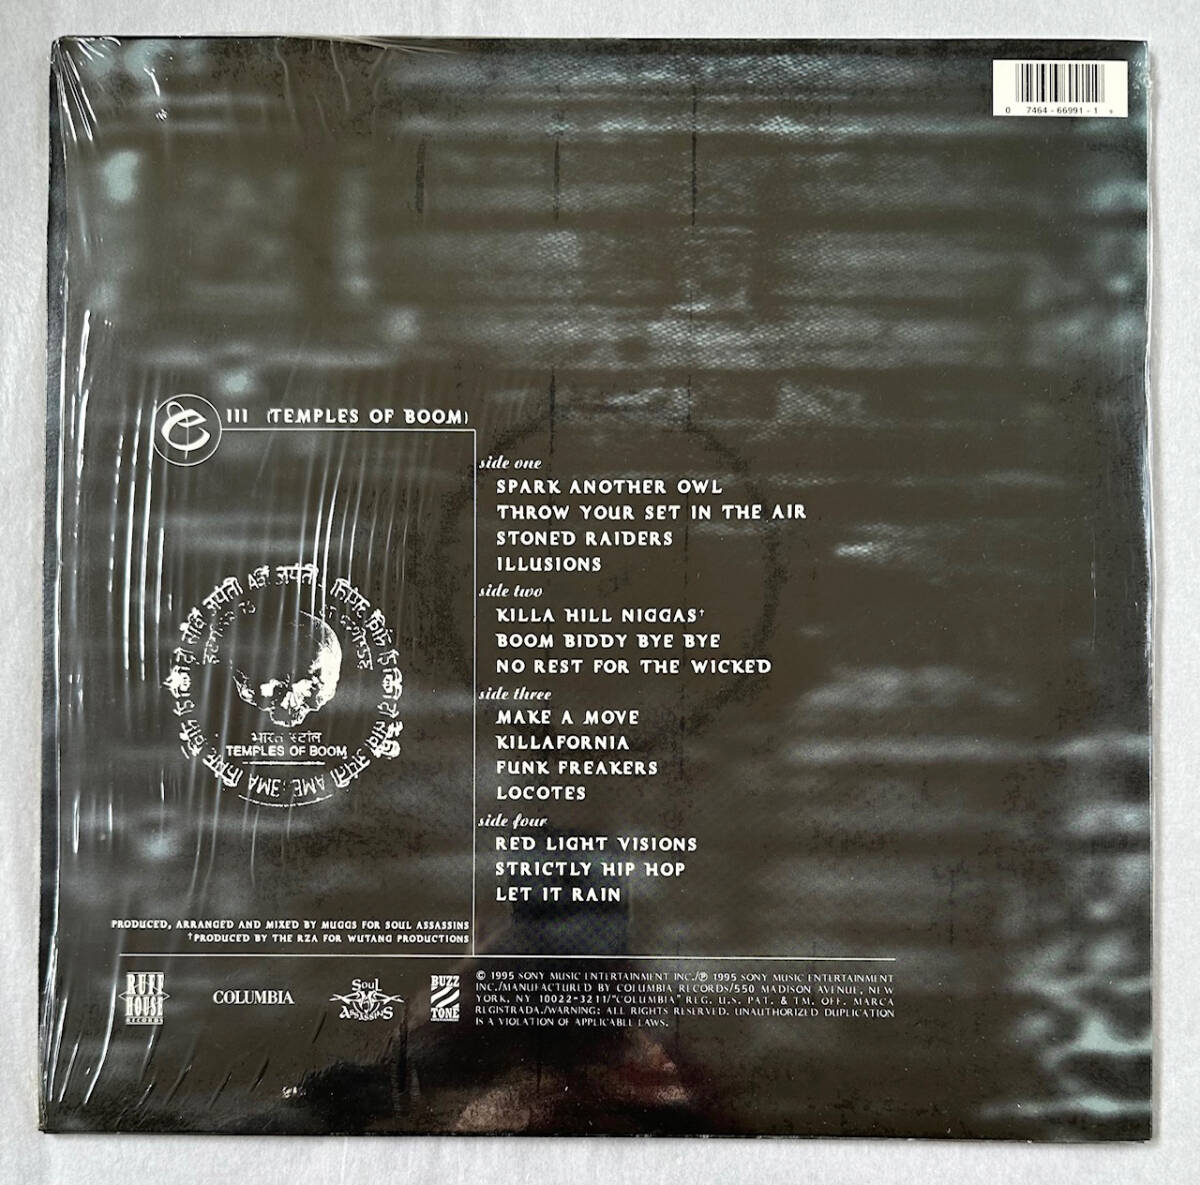 ■1995年 オリジナル US盤 Cypress Hill - III (Temples Of Boom) 12”LP 66991 Columbia / Ruff House Records_画像2